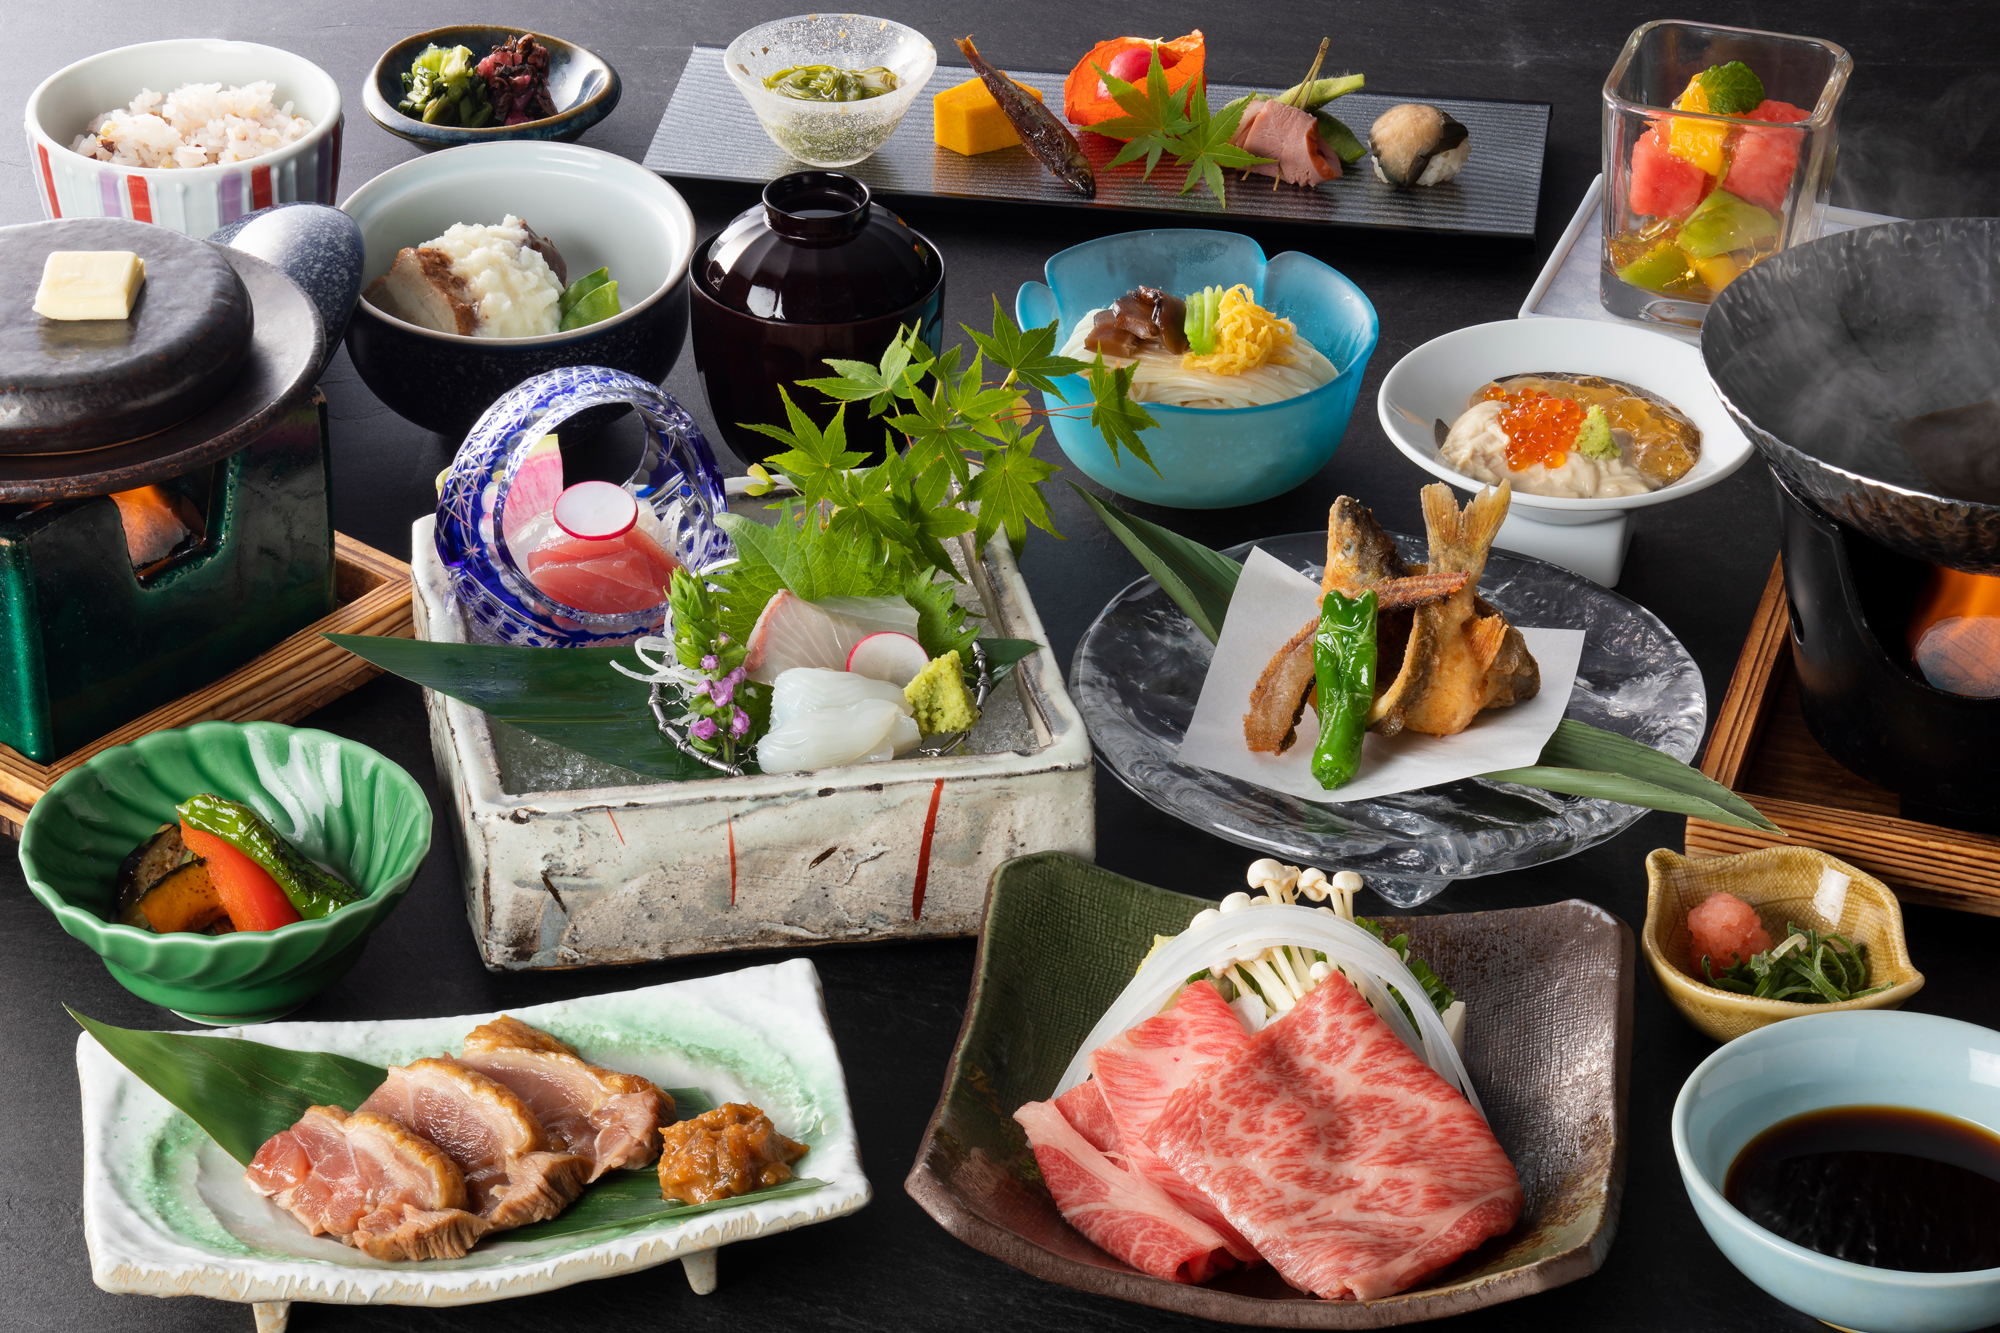 日本料理「竹の家」奈良づくし会席 イメージ